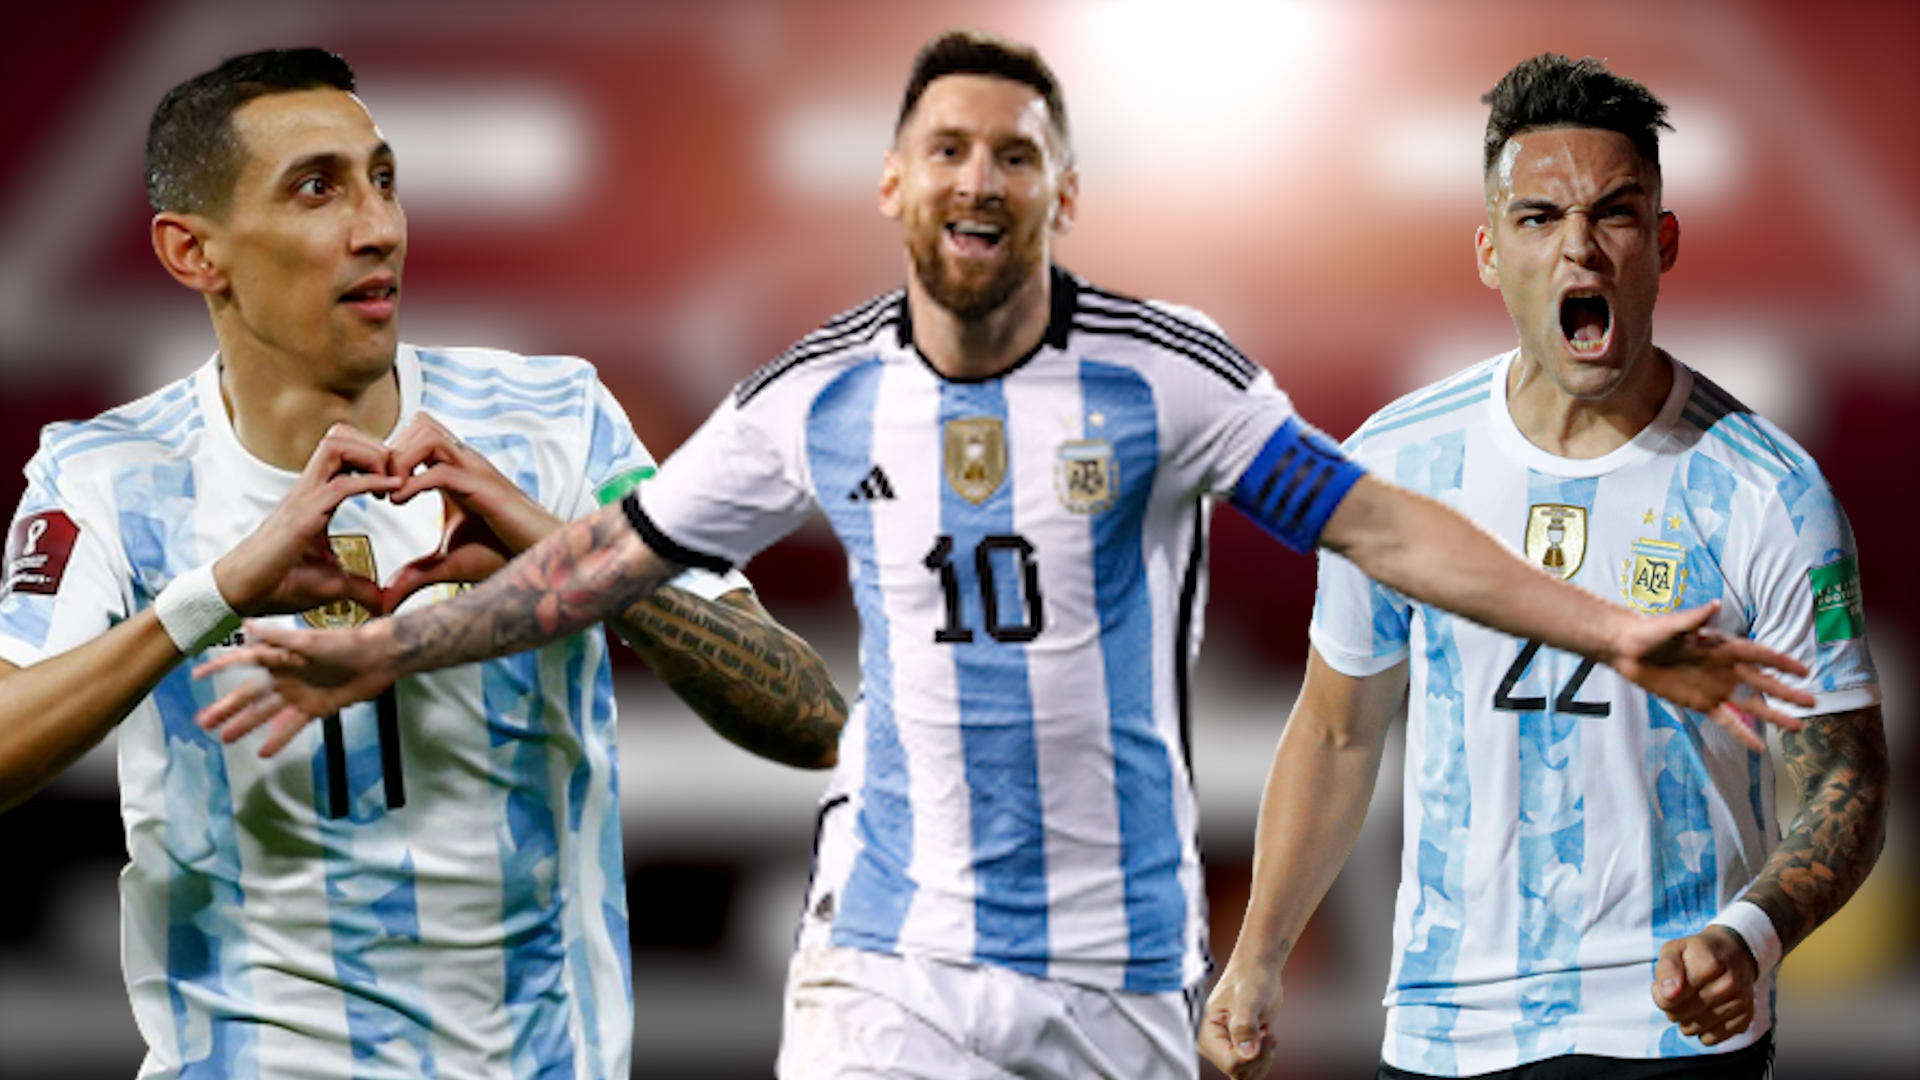 Sự trỗi dậy của đội hình tuyển Argentina là câu chuyện được nhiều người mong đợi. Các cầu thủ tài năng và sự khát khao chiến thắng đem lại hy vọng cho người hâm mộ. Hãy cùng xem ảnh liên quan để theo dõi các trận đấu tiếp theo của đội tuyển Argentina.